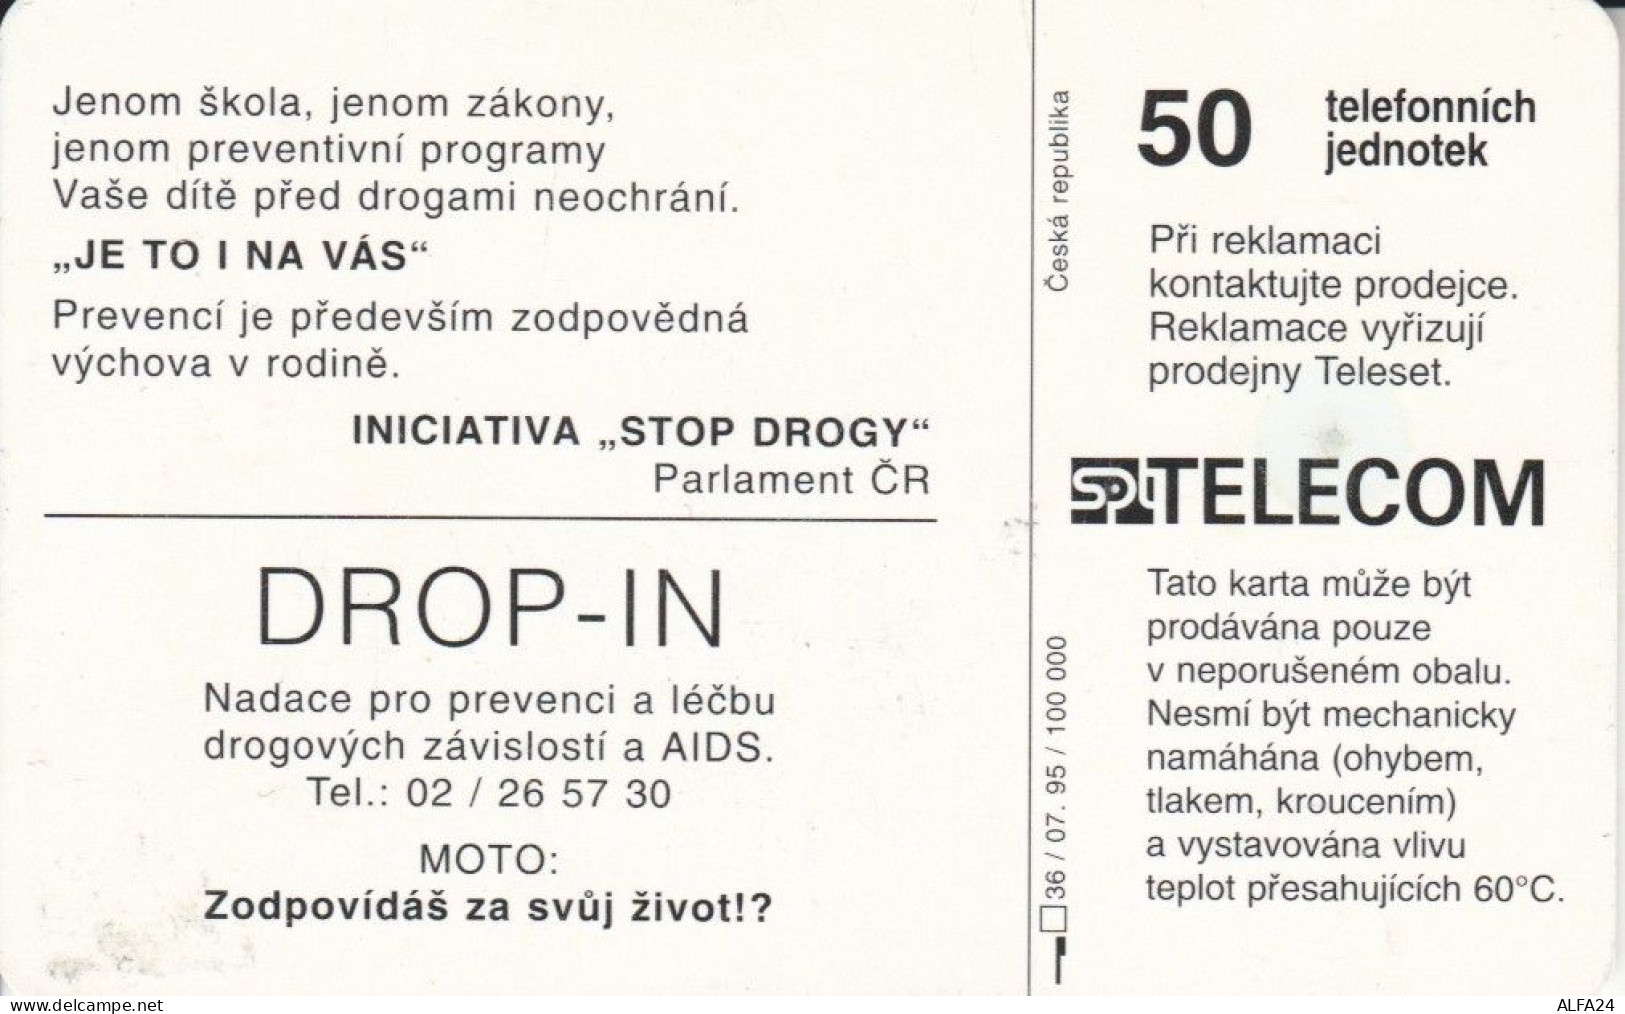 PHONE CARD REPUBBLICA CECA (J.24.5 - Tschechische Rep.